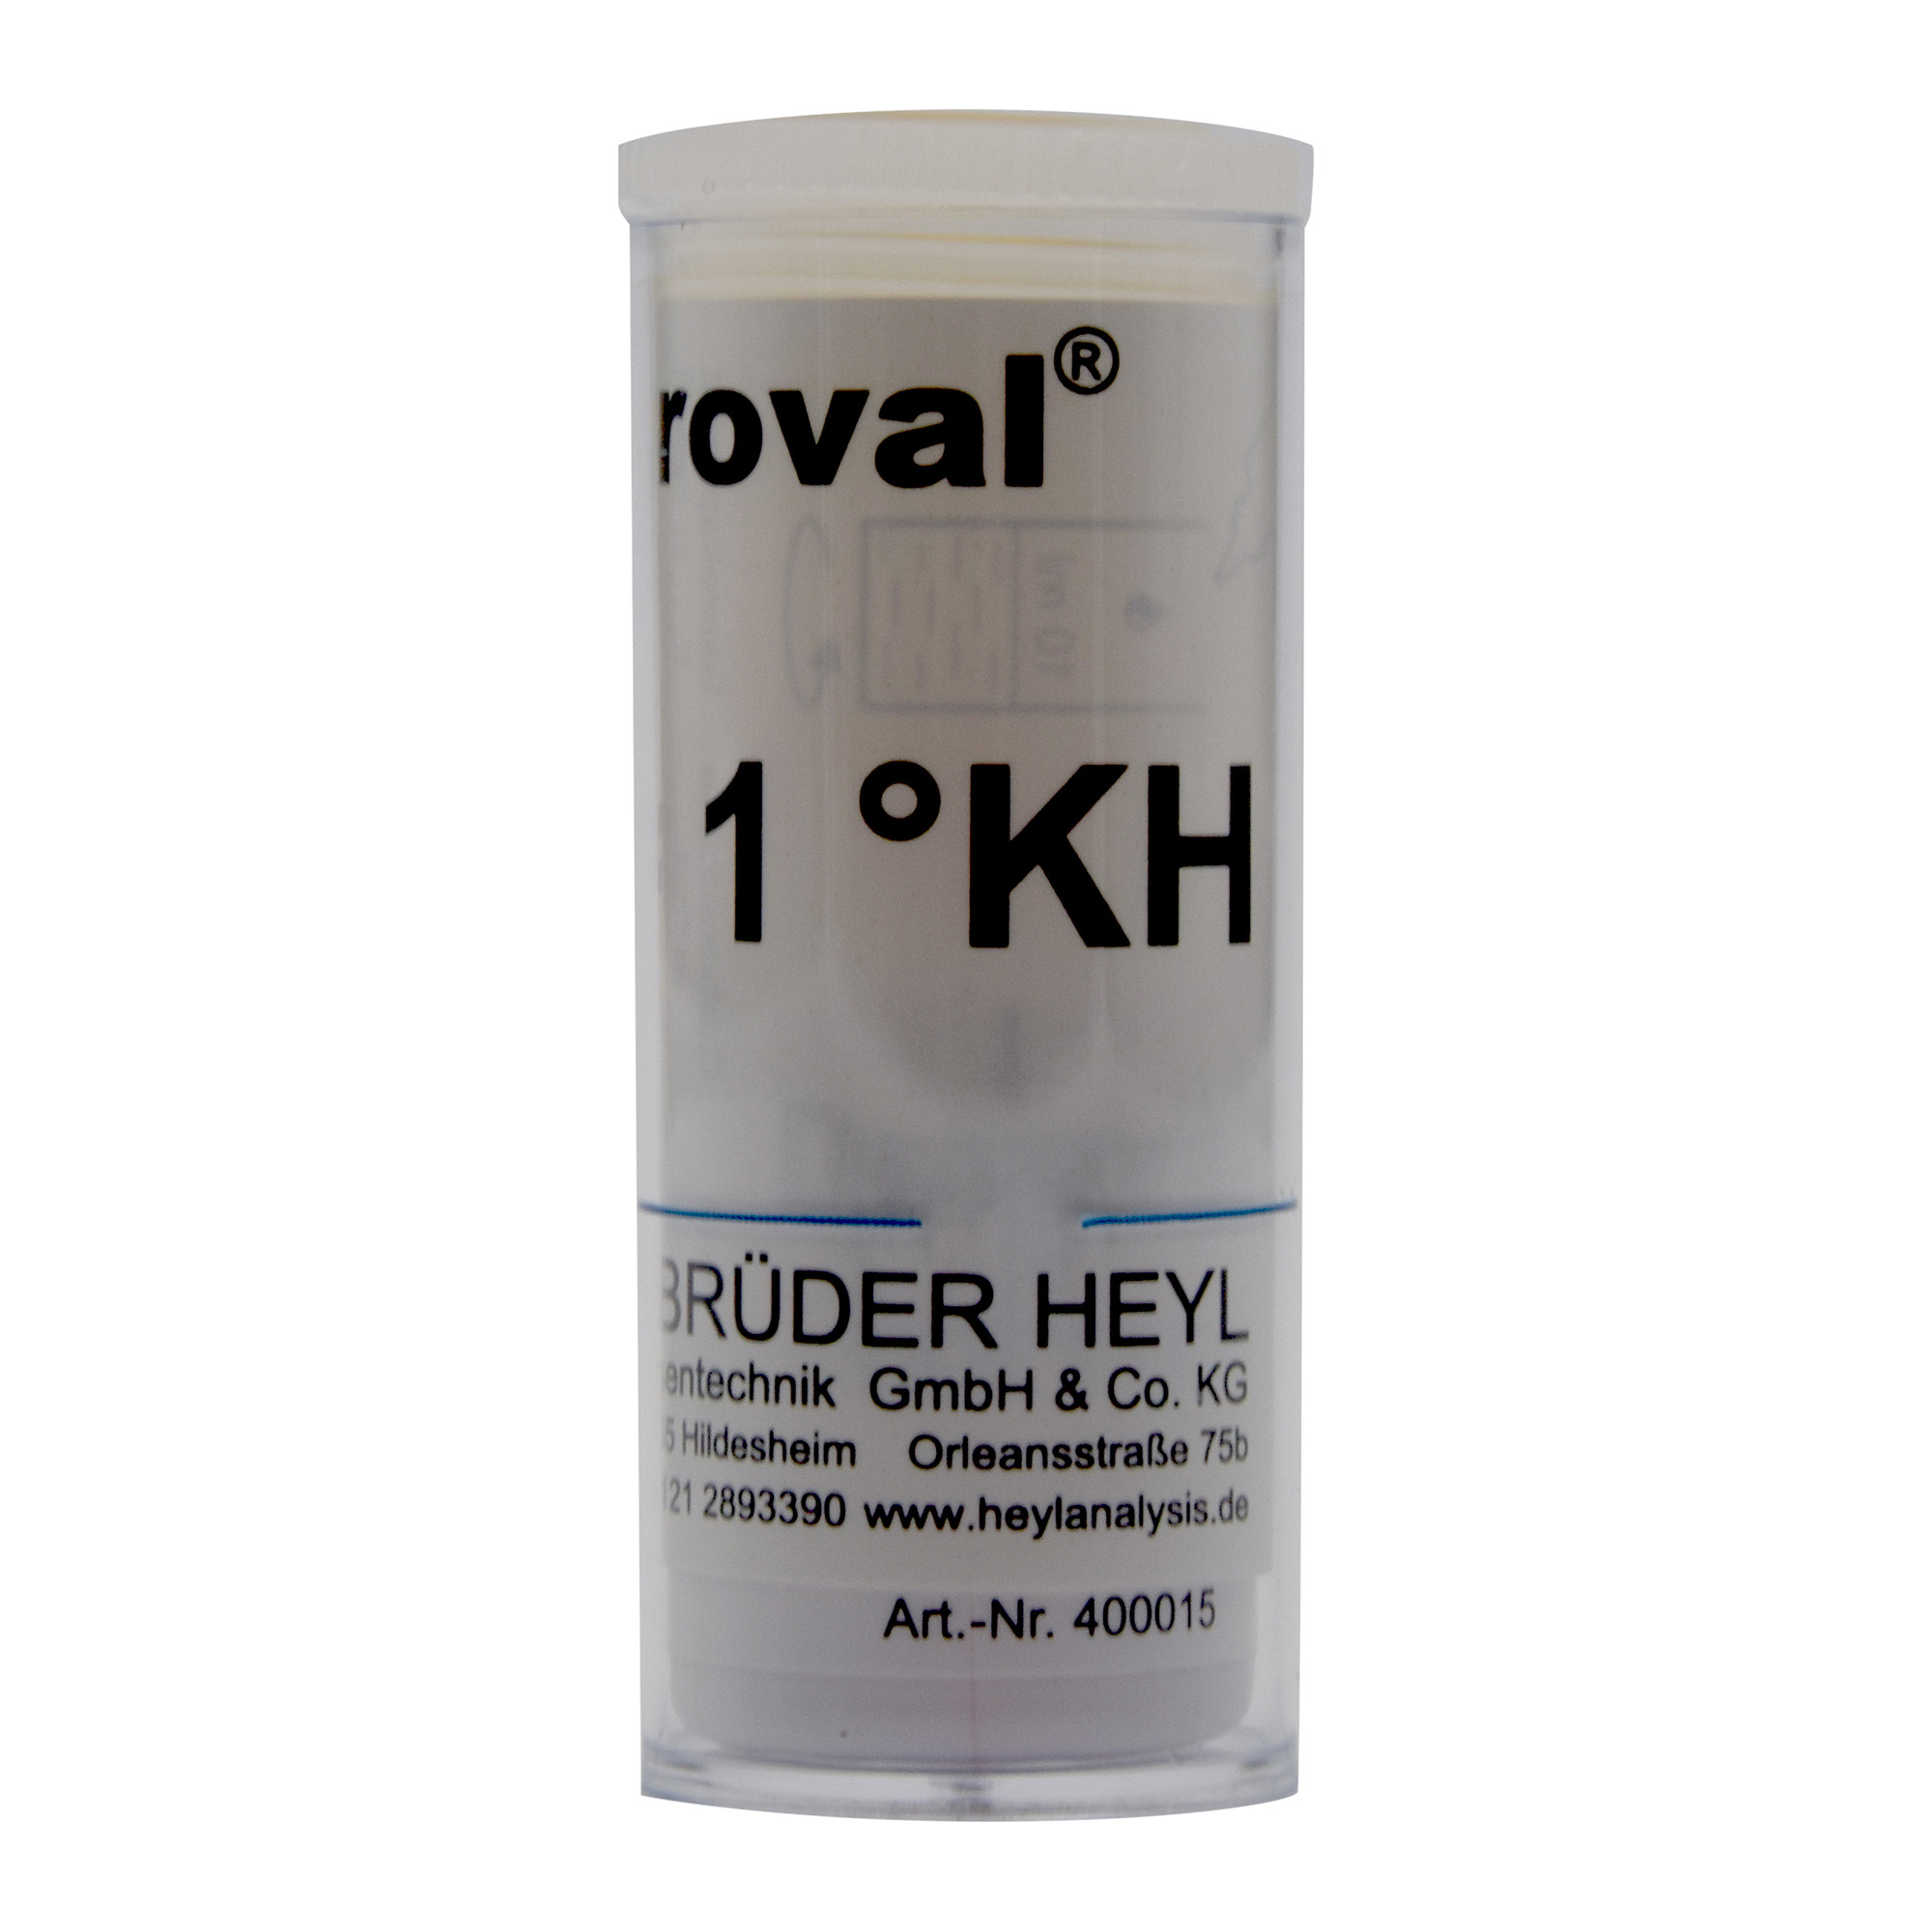 DUROVAL® 1 Tr. = 1 °KH titration kit (50 pcs.)